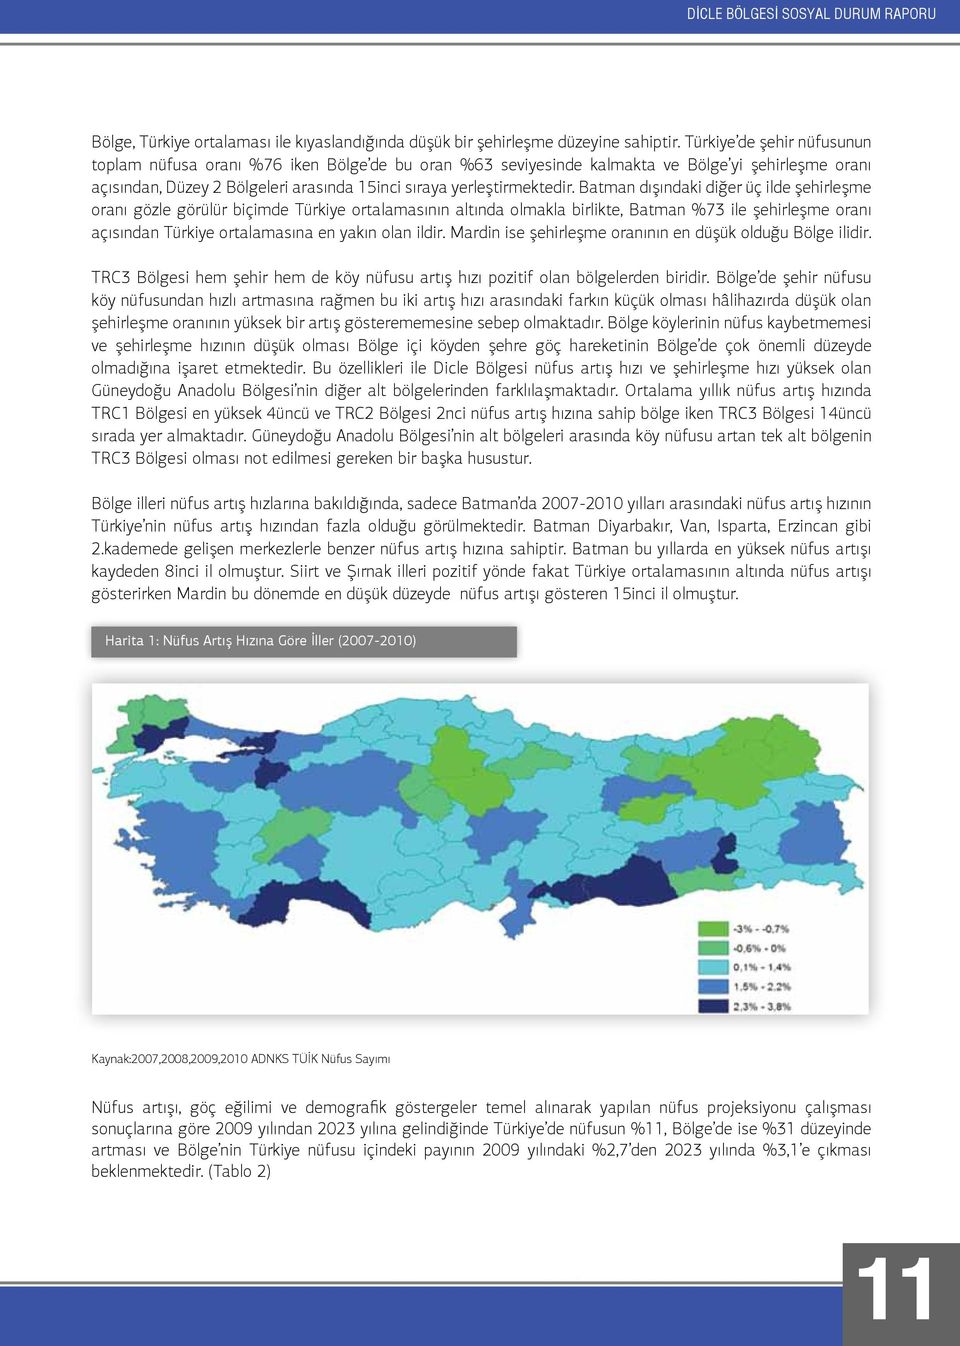 Batman dışındaki diğer üç ilde şehirleşme oranı gözle görülür biçimde Türkiye ortalamasının altında olmakla birlikte, Batman %73 ile şehirleşme oranı açısından Türkiye ortalamasına en yakın olan